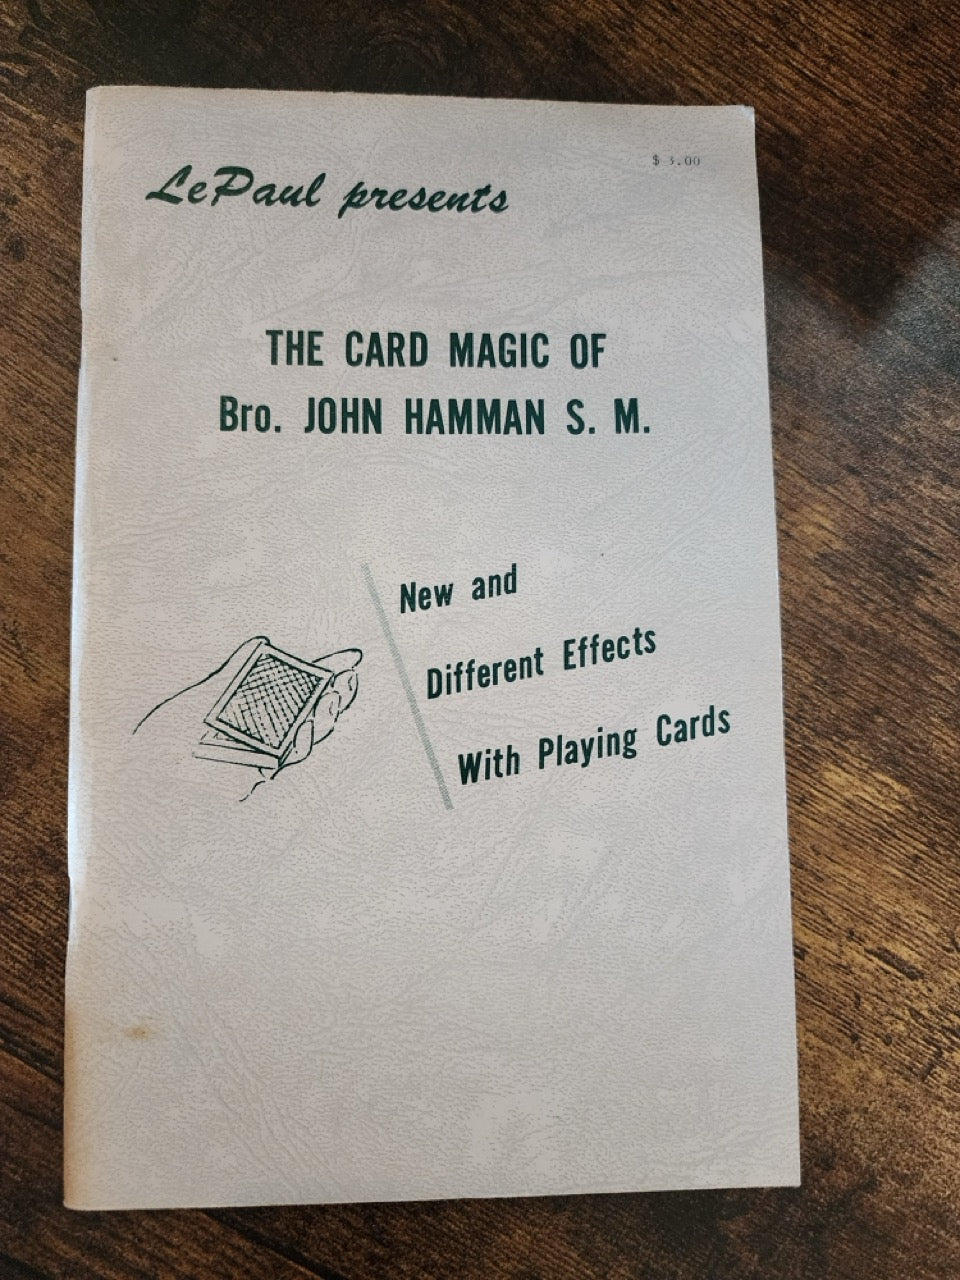 The Card Magic of Bro. John Hamman - Paul LePaul